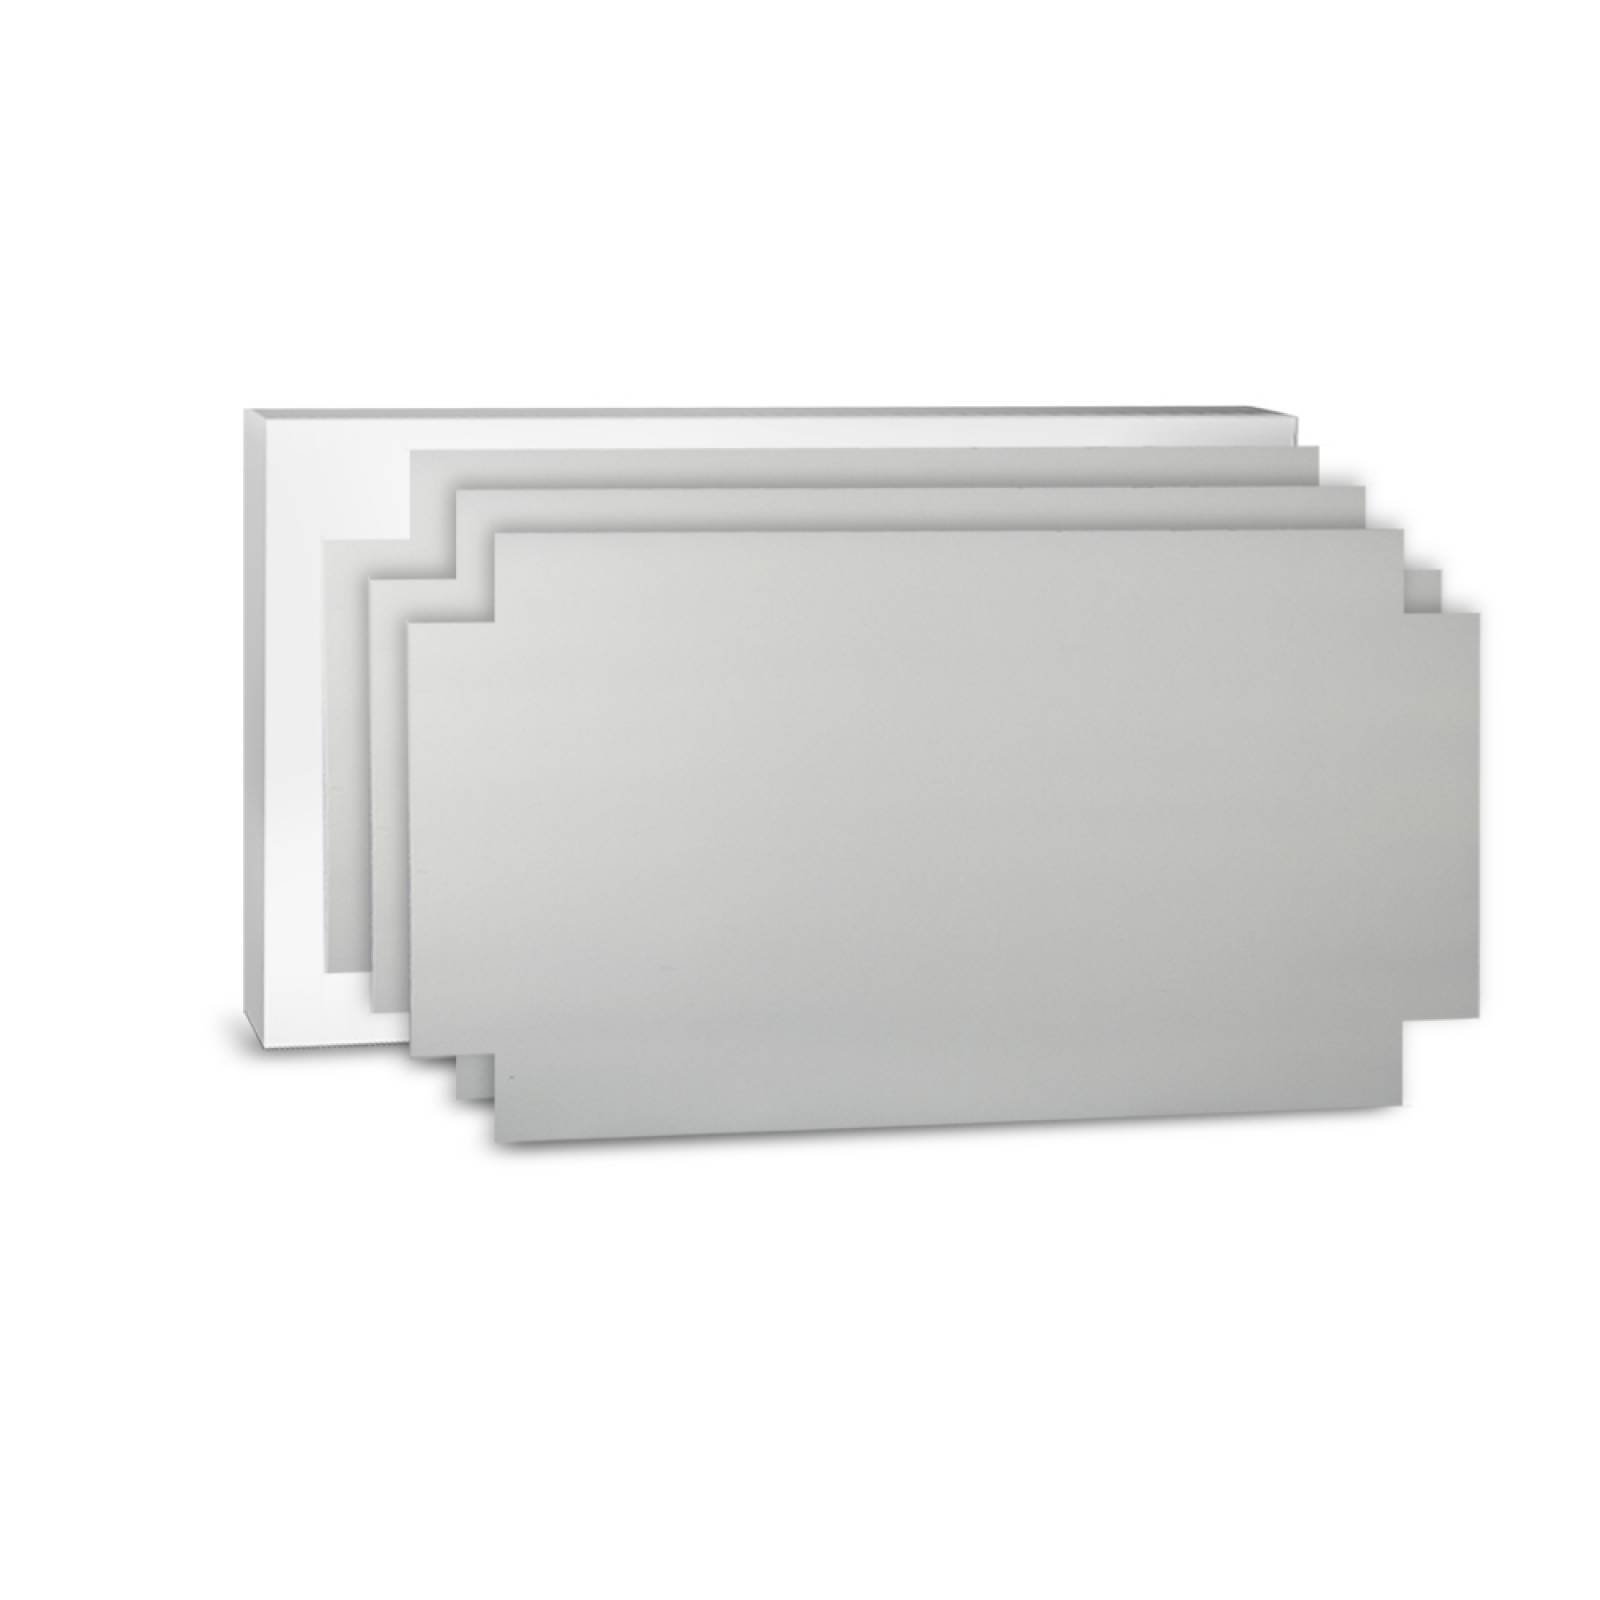 Aislante Cerámico Protector Térmico para Pared de 52 x 20 cm Blanco, Paquete 3 Piezas, Mod: 3PTPP3Bl